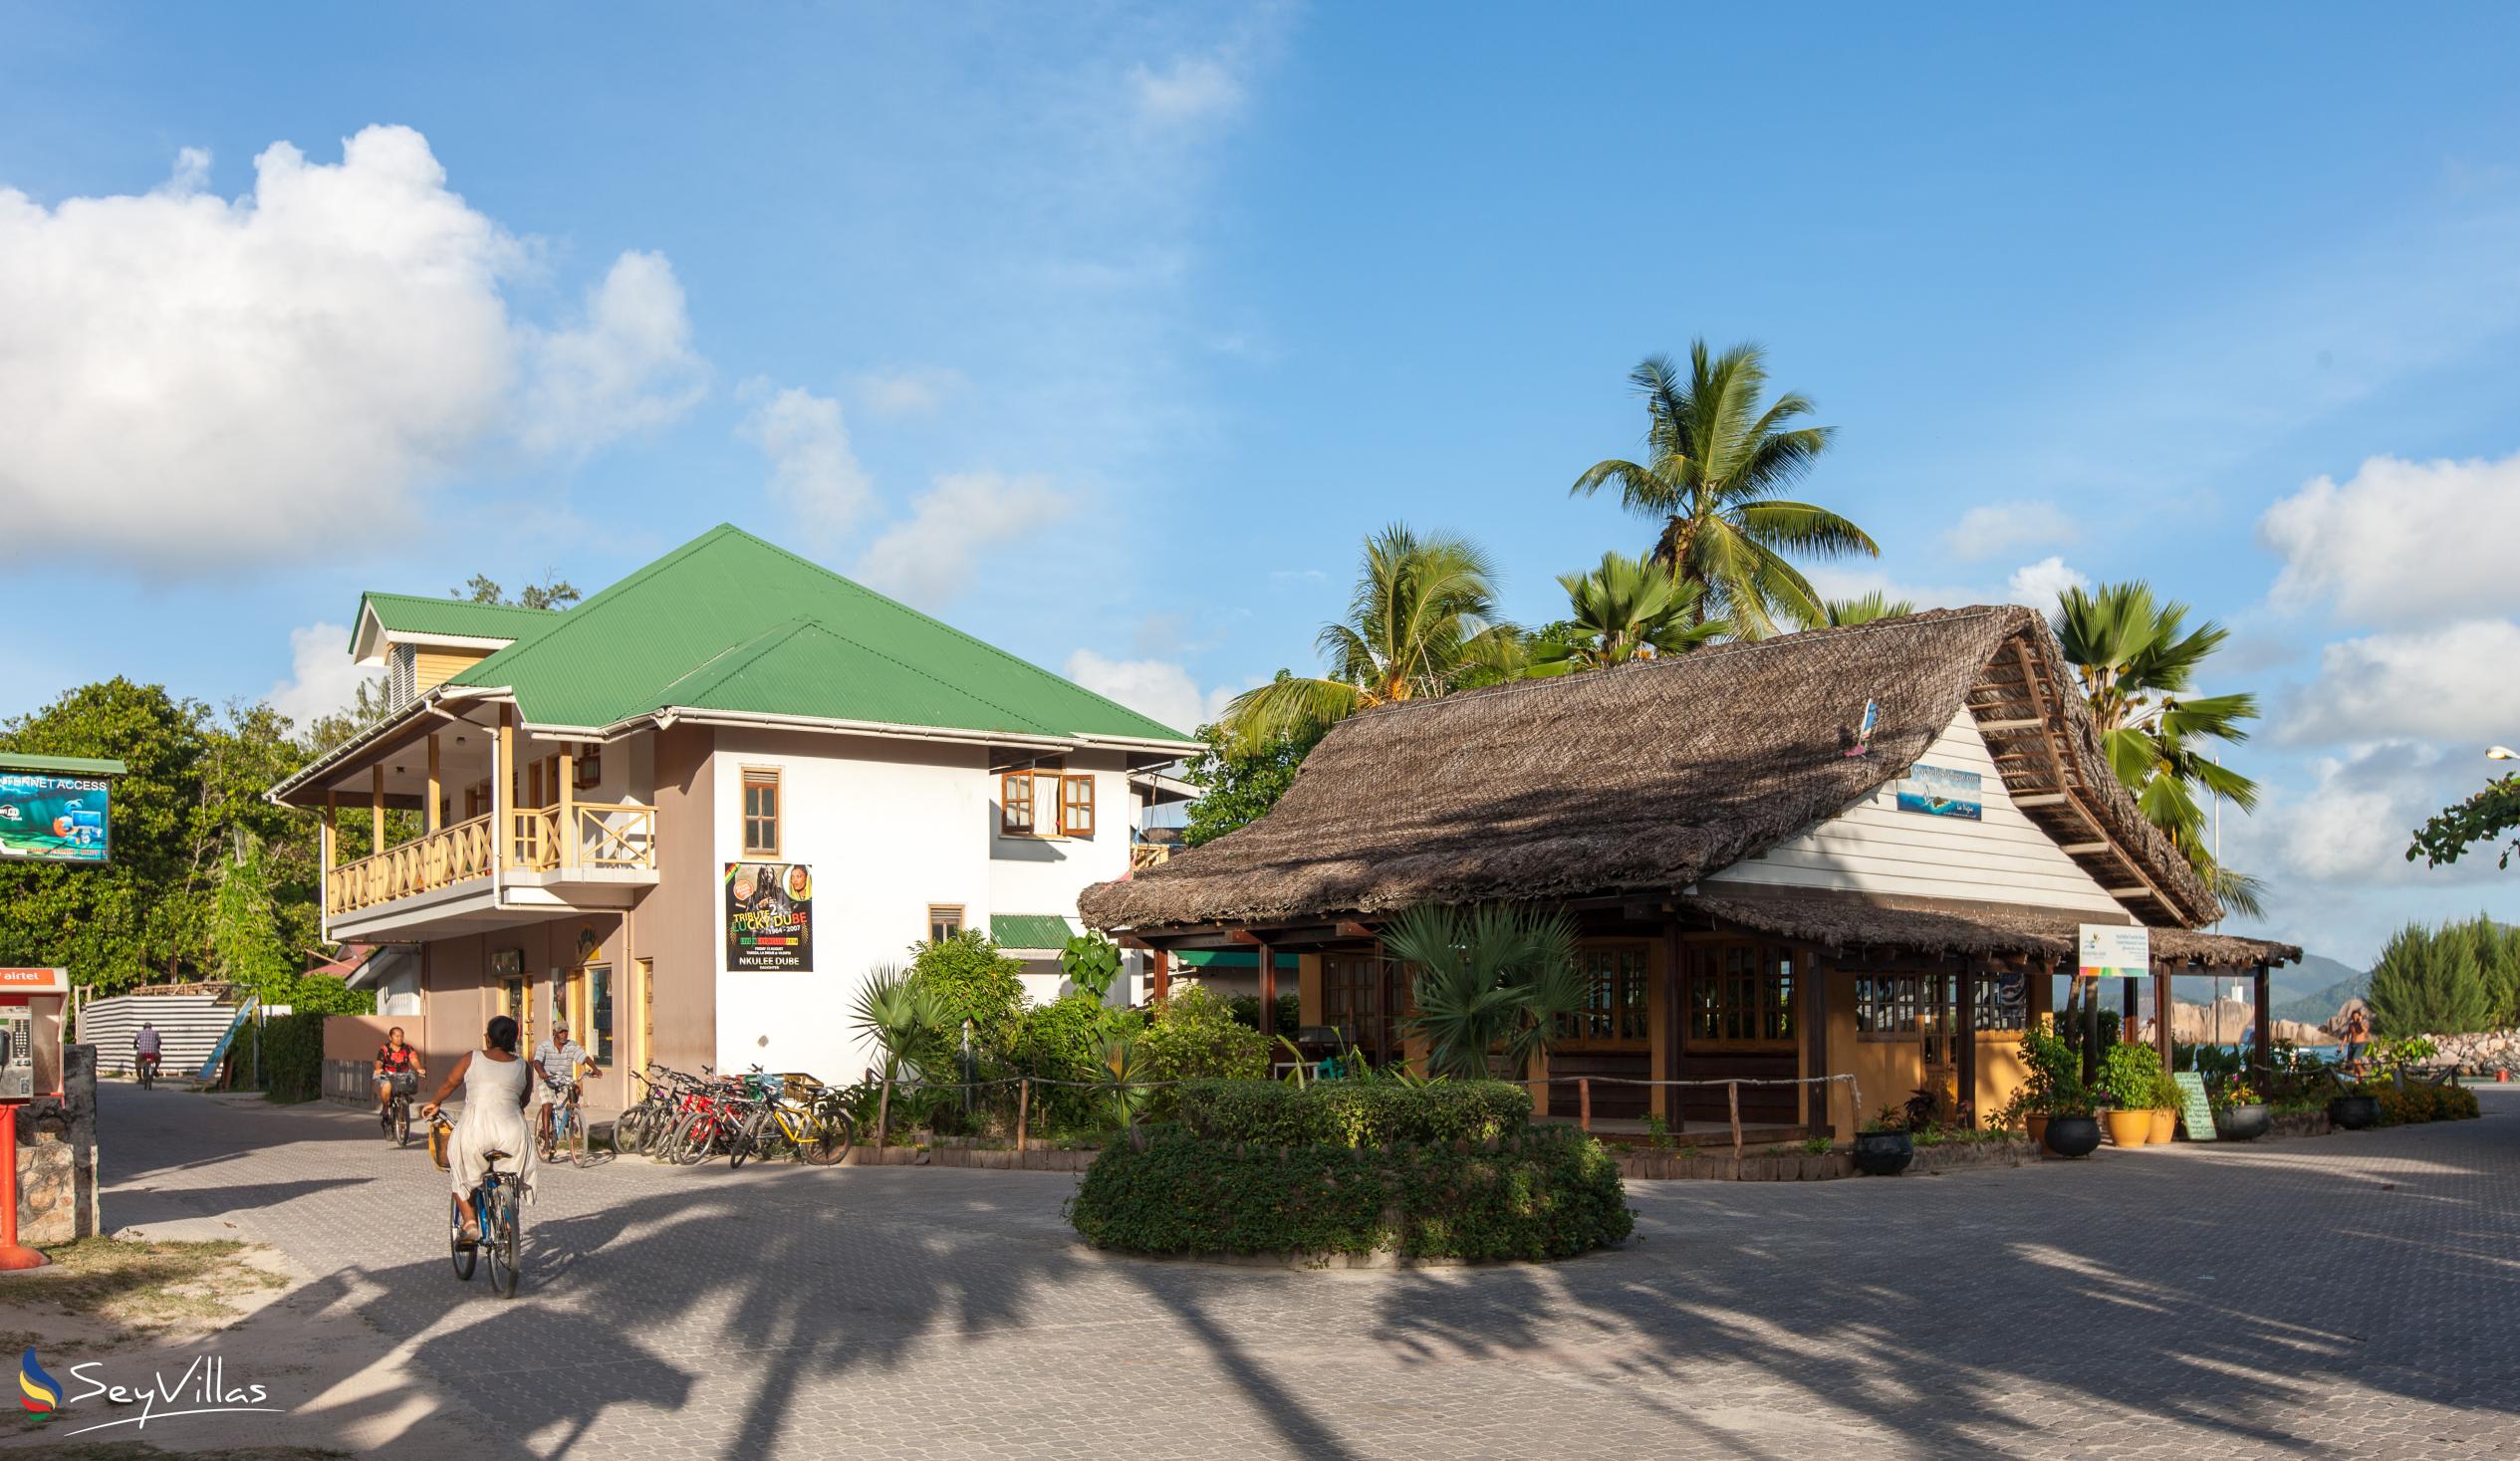 Foto 40: Villa Creole - Posizione - La Digue (Seychelles)